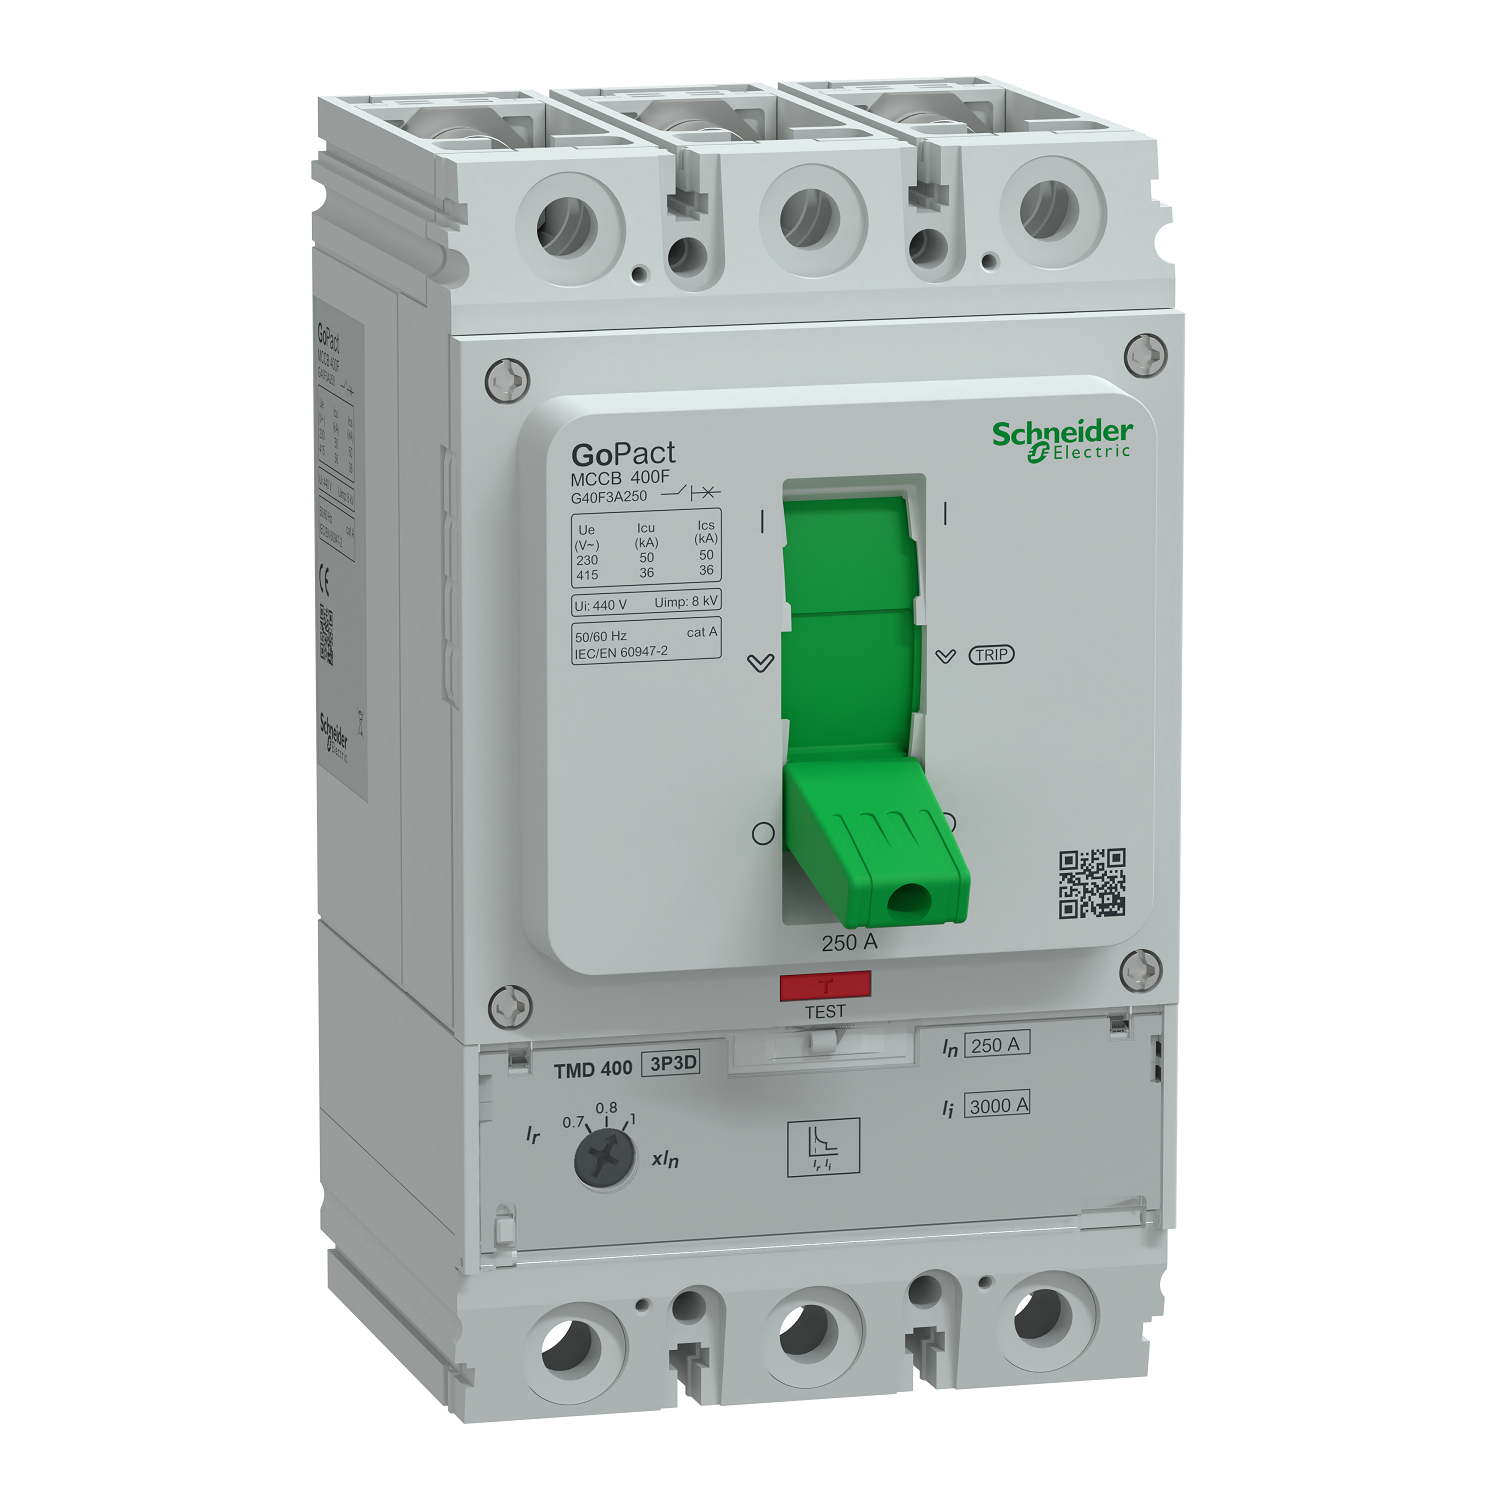 Circuit breaker, GoPact MCCB 400, 3 poles, 36kA at 415VAC, 250A rating, TMD trip unit, adjustable thermal protection